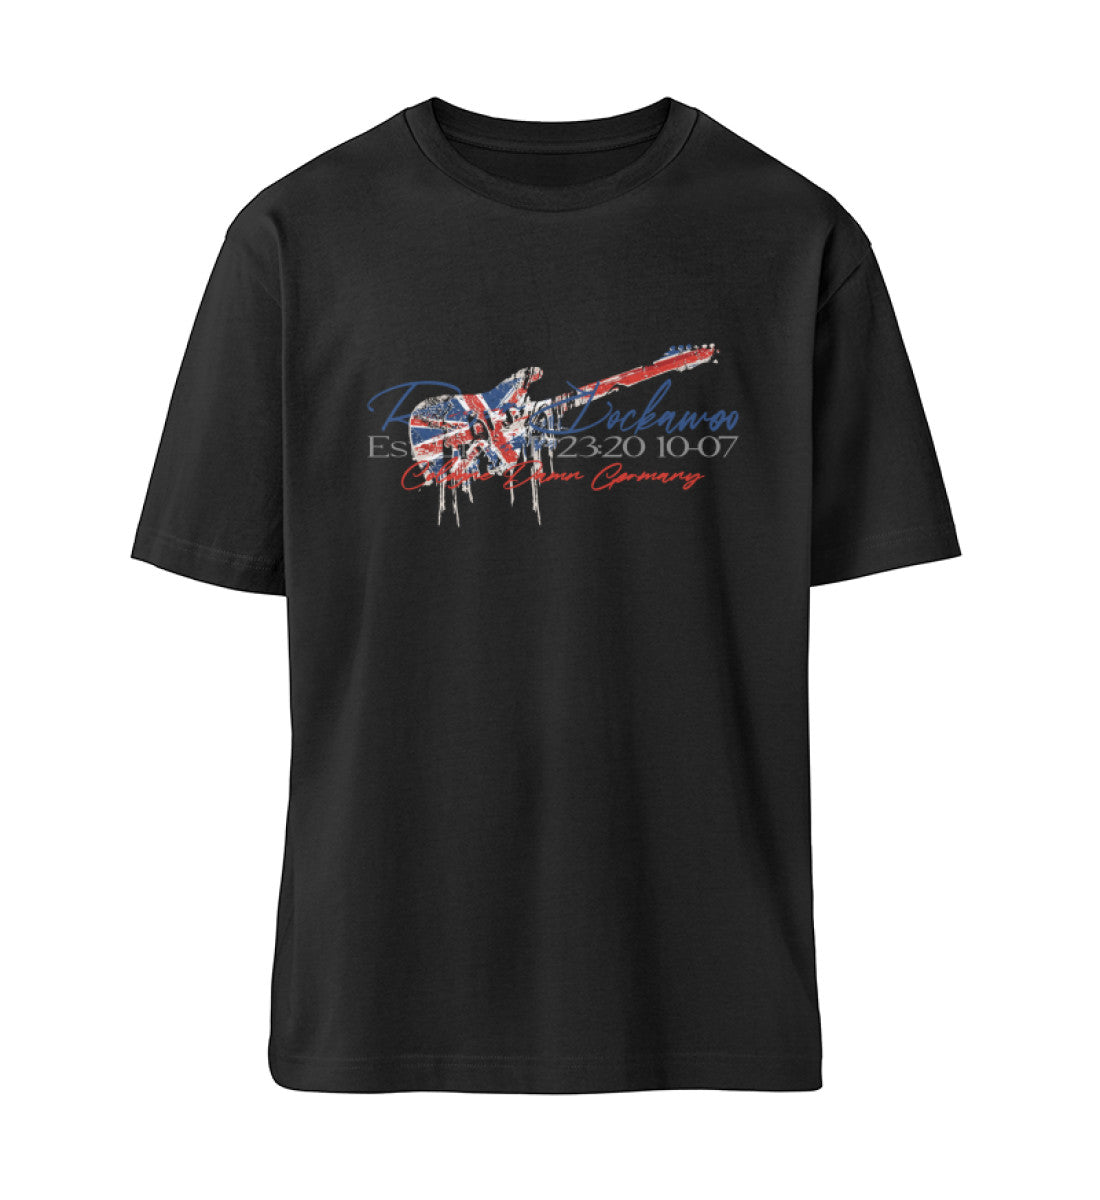 Schwarzes T-Shirt Unisex Relaxed Fit für Frauen und Männer bedruckt mit dem Design der Roger Rockawoo Kollektion Guitar Britpop Tragedy